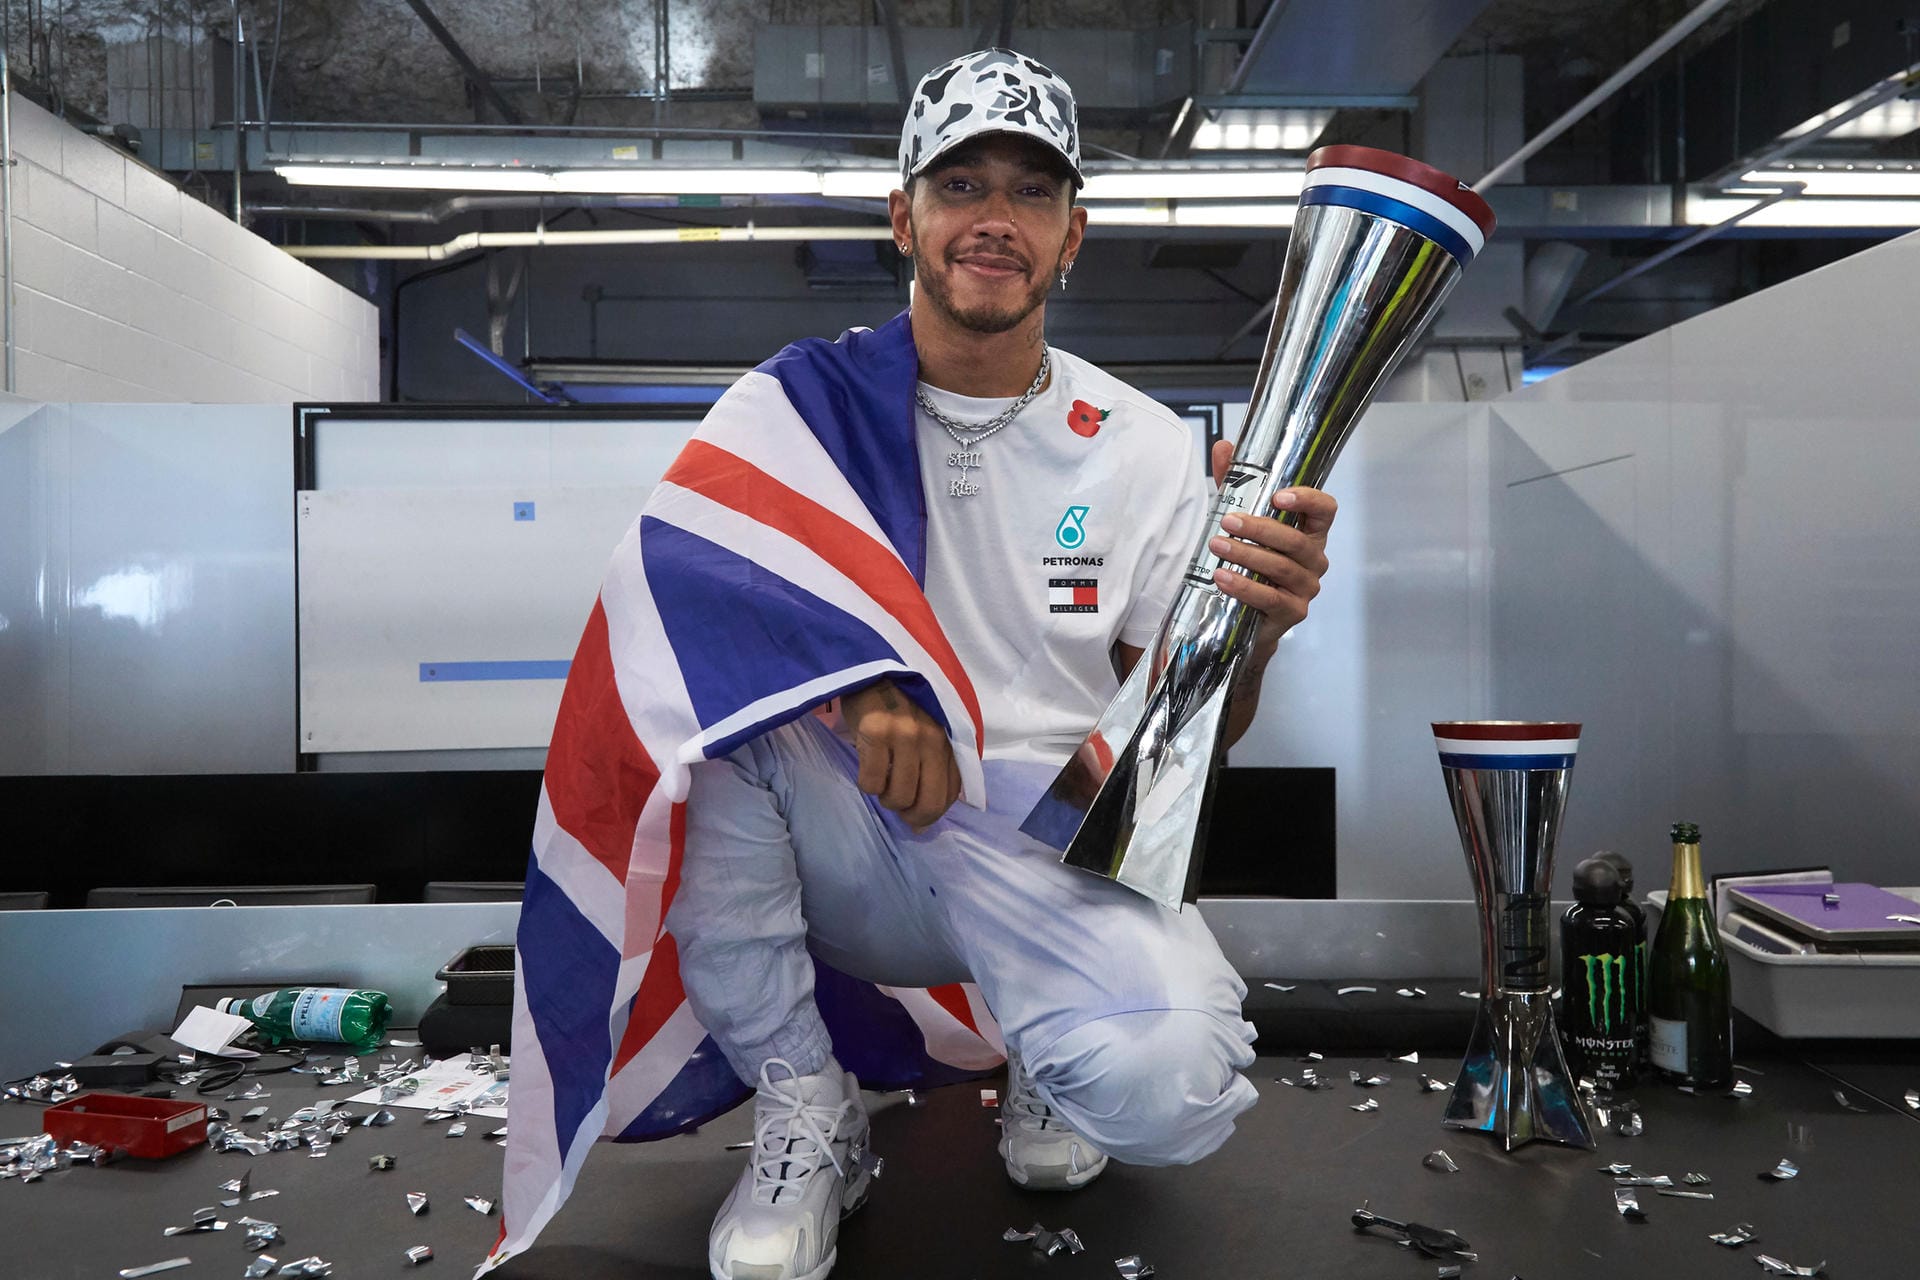 Nach dem Rücktritt von Nico Rosberg kehrte die Hamilton-Dominanz zurück. Nach einem souveränen Jahr 2018 holte er 2019 seinen nun insgesamt sechsten Titel und steht kurz davor, im kommenden Jahr Michael Schumachers Rekordmarke von sieben Titeln zu knacken.